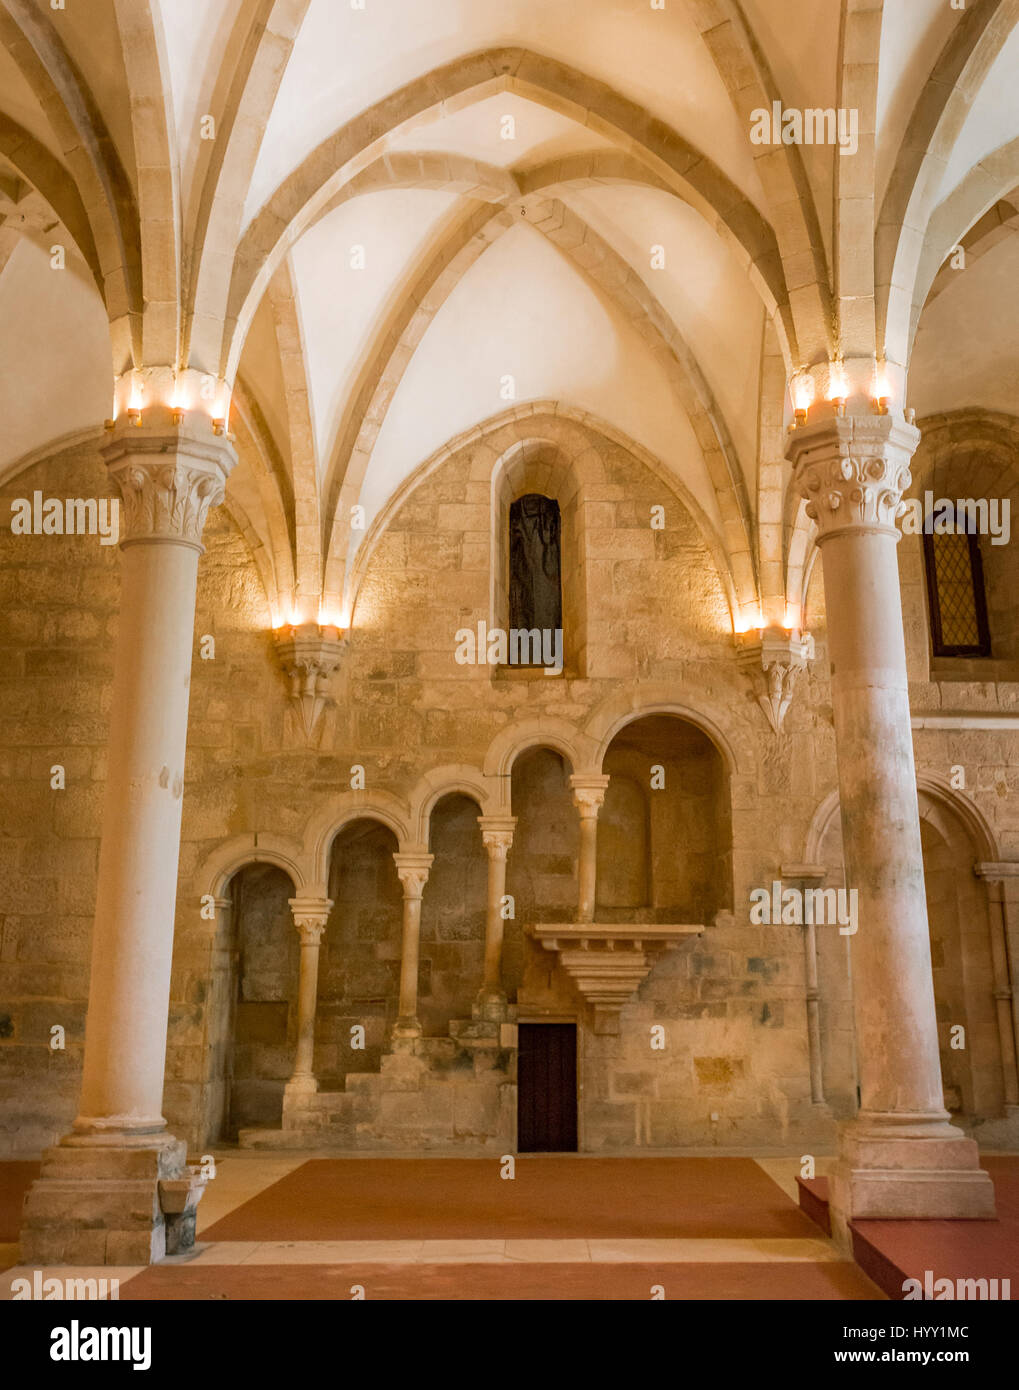 Vista interior en Alcobaca Monasterio, Portugal Foto de stock